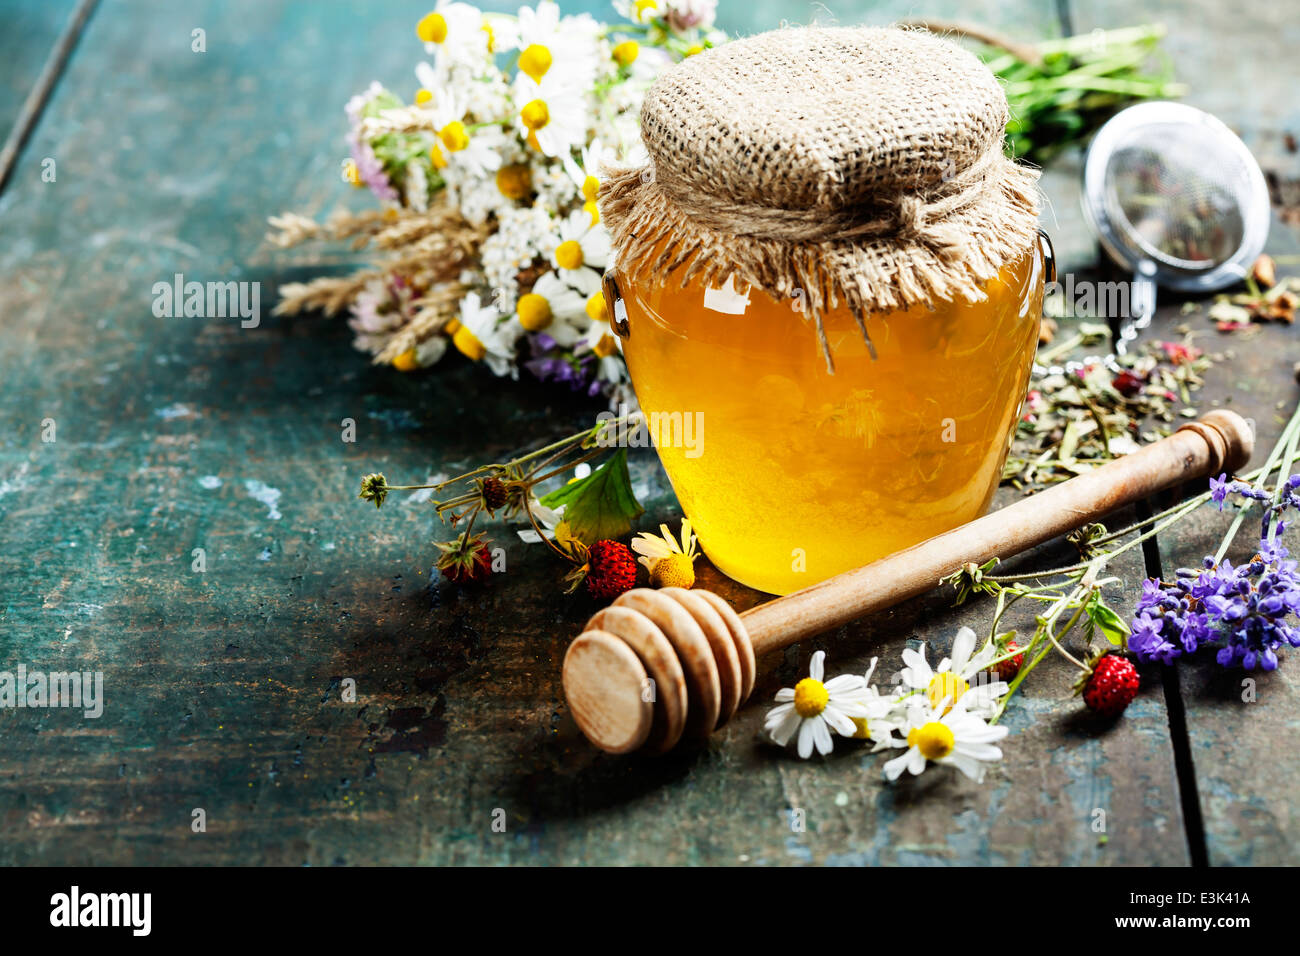 Miele e tè alle erbe su sfondo di legno - estate, salute e cibo biologico concetto Foto Stock